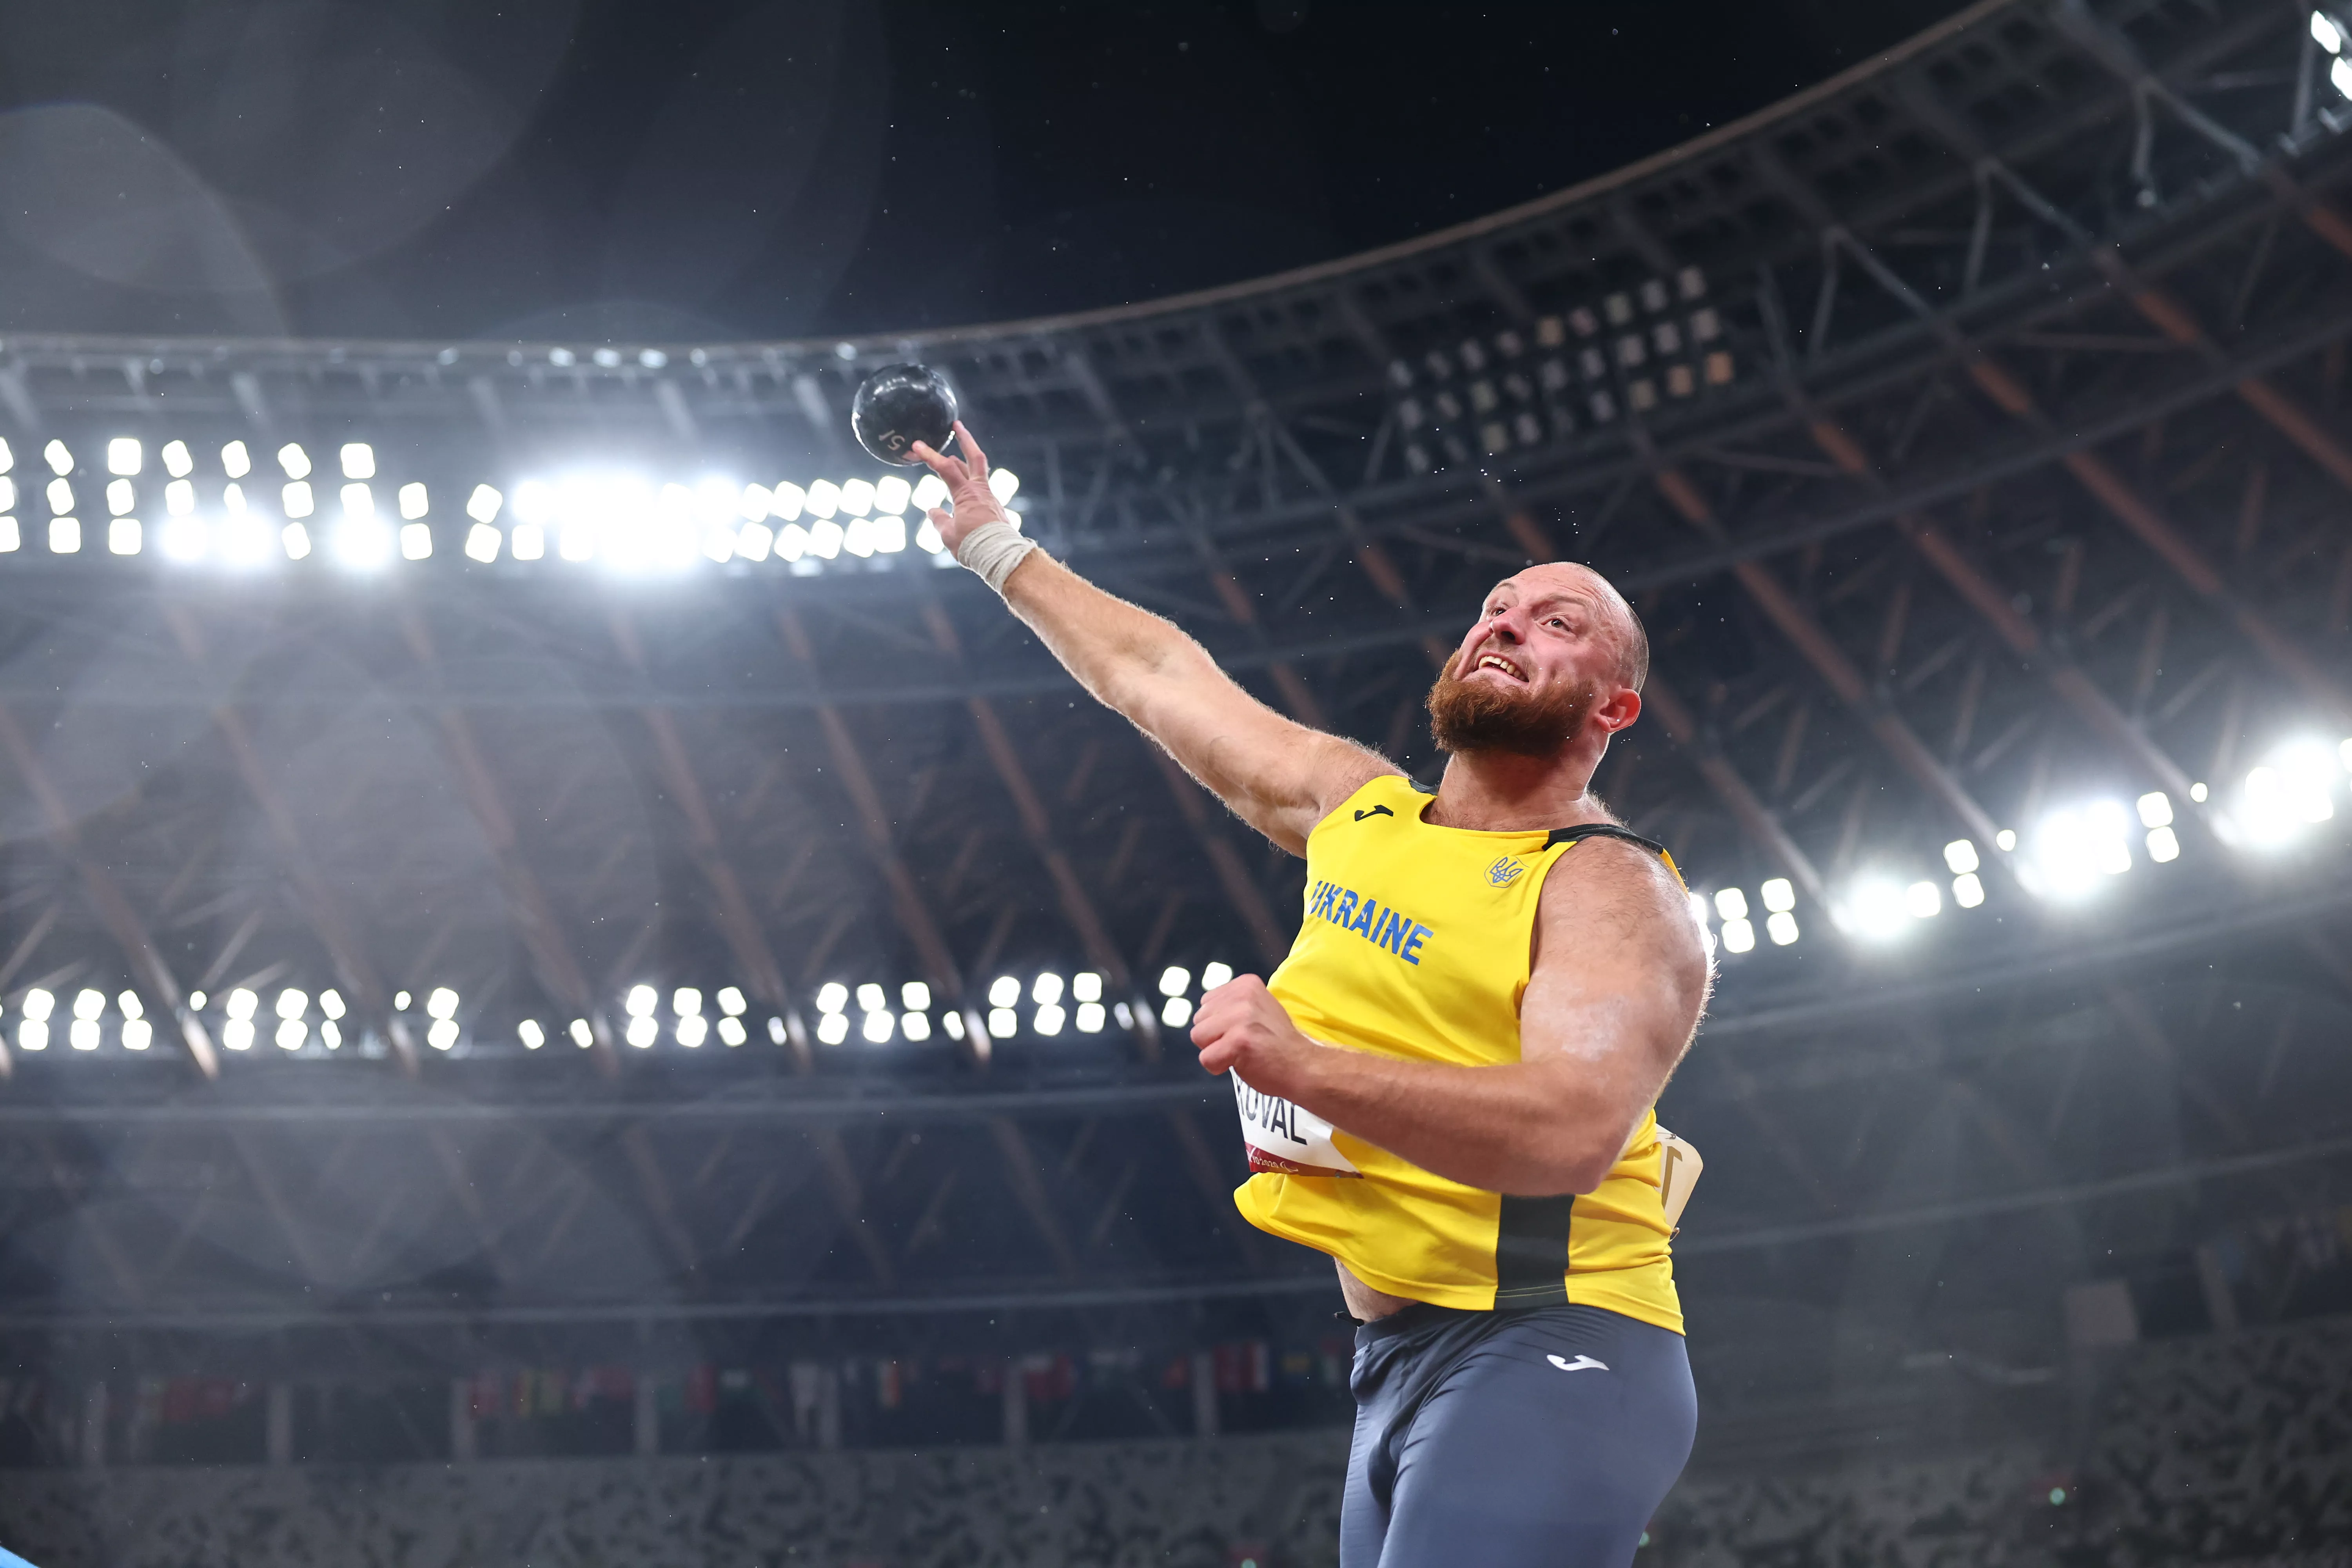 Максим Коваль завоевал золотую медаль на Паралимпиаде-2020 в толкании ядра